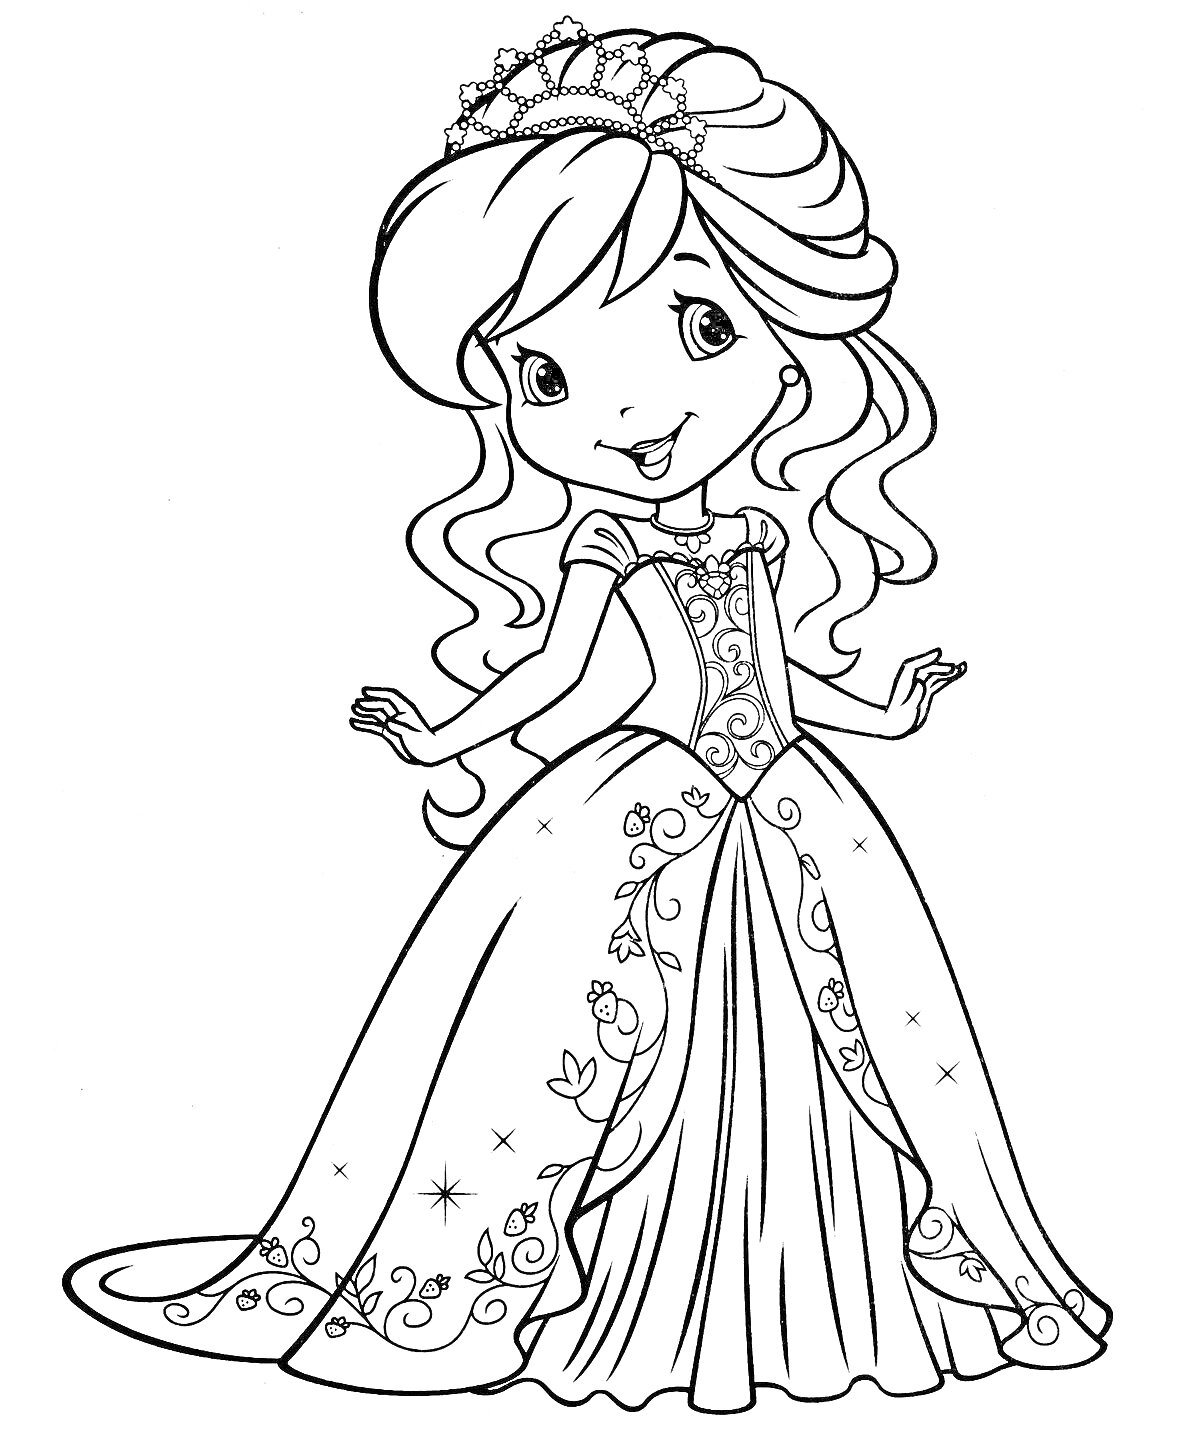 Принцесса с диадемой в длинном платье с узорами и цветами